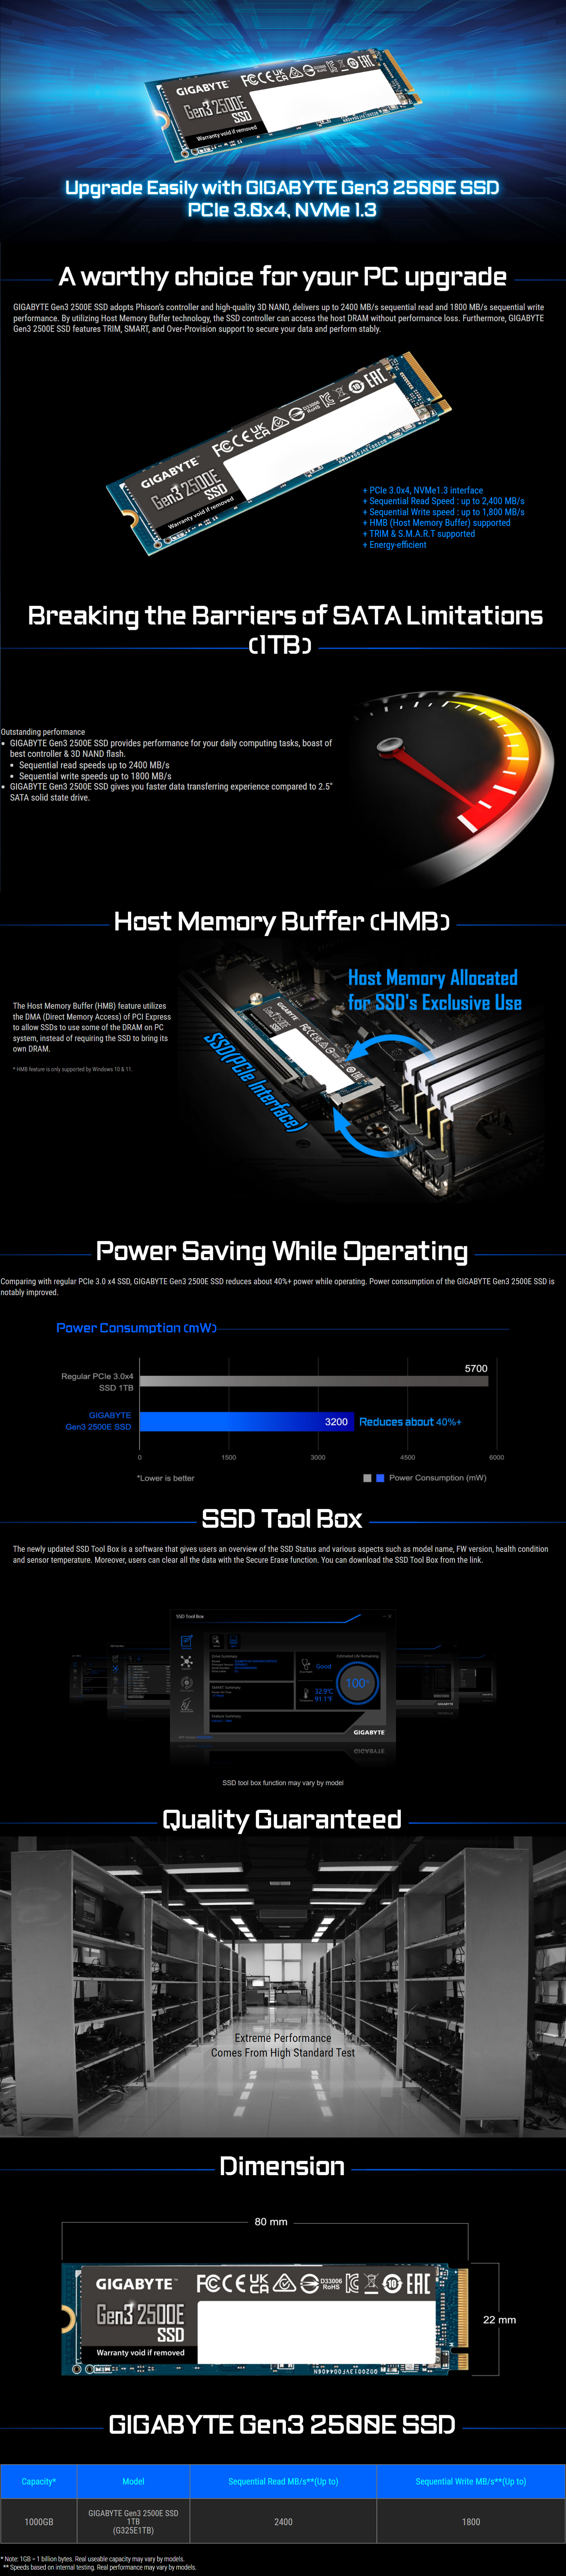 SSD-Hard-Drives-Gigabyte-G3-2500E-1TB-M-2-2280-NVMe-PCIe-Gen3-SSD-1